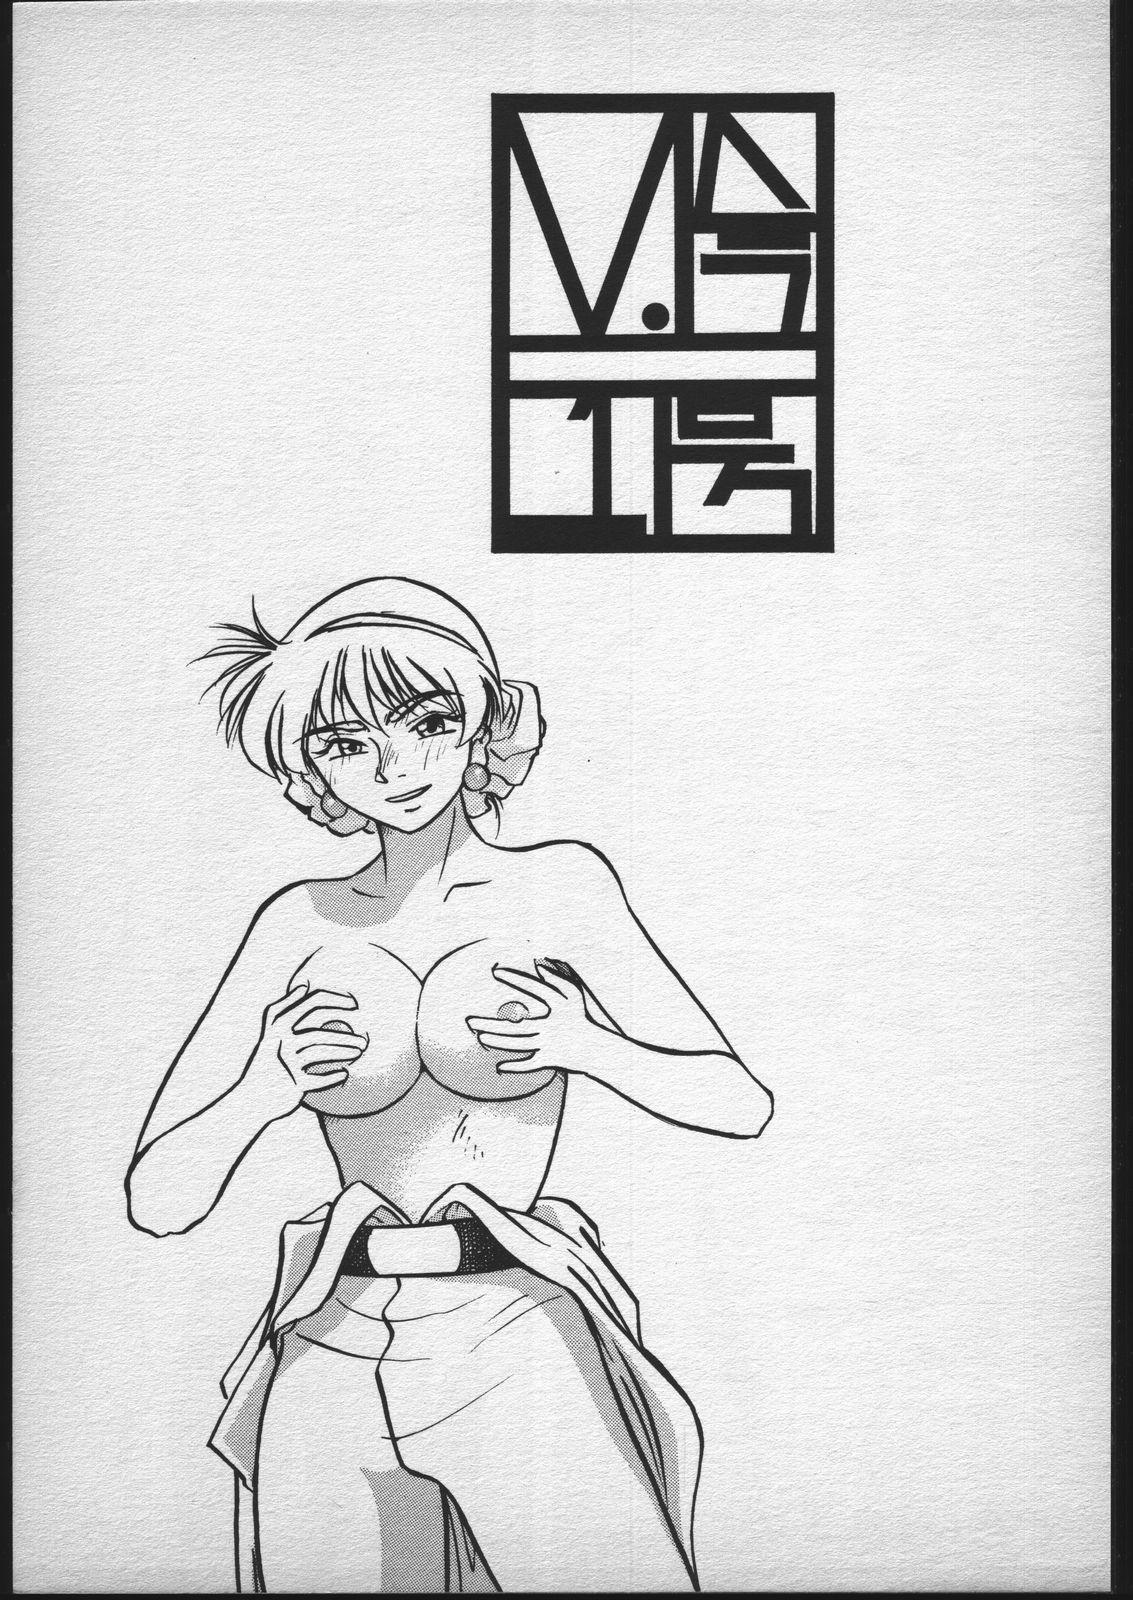 Sexy Girl Sex V.Hera 1 Gou - Sailor moon Pov Sex - Picture 2